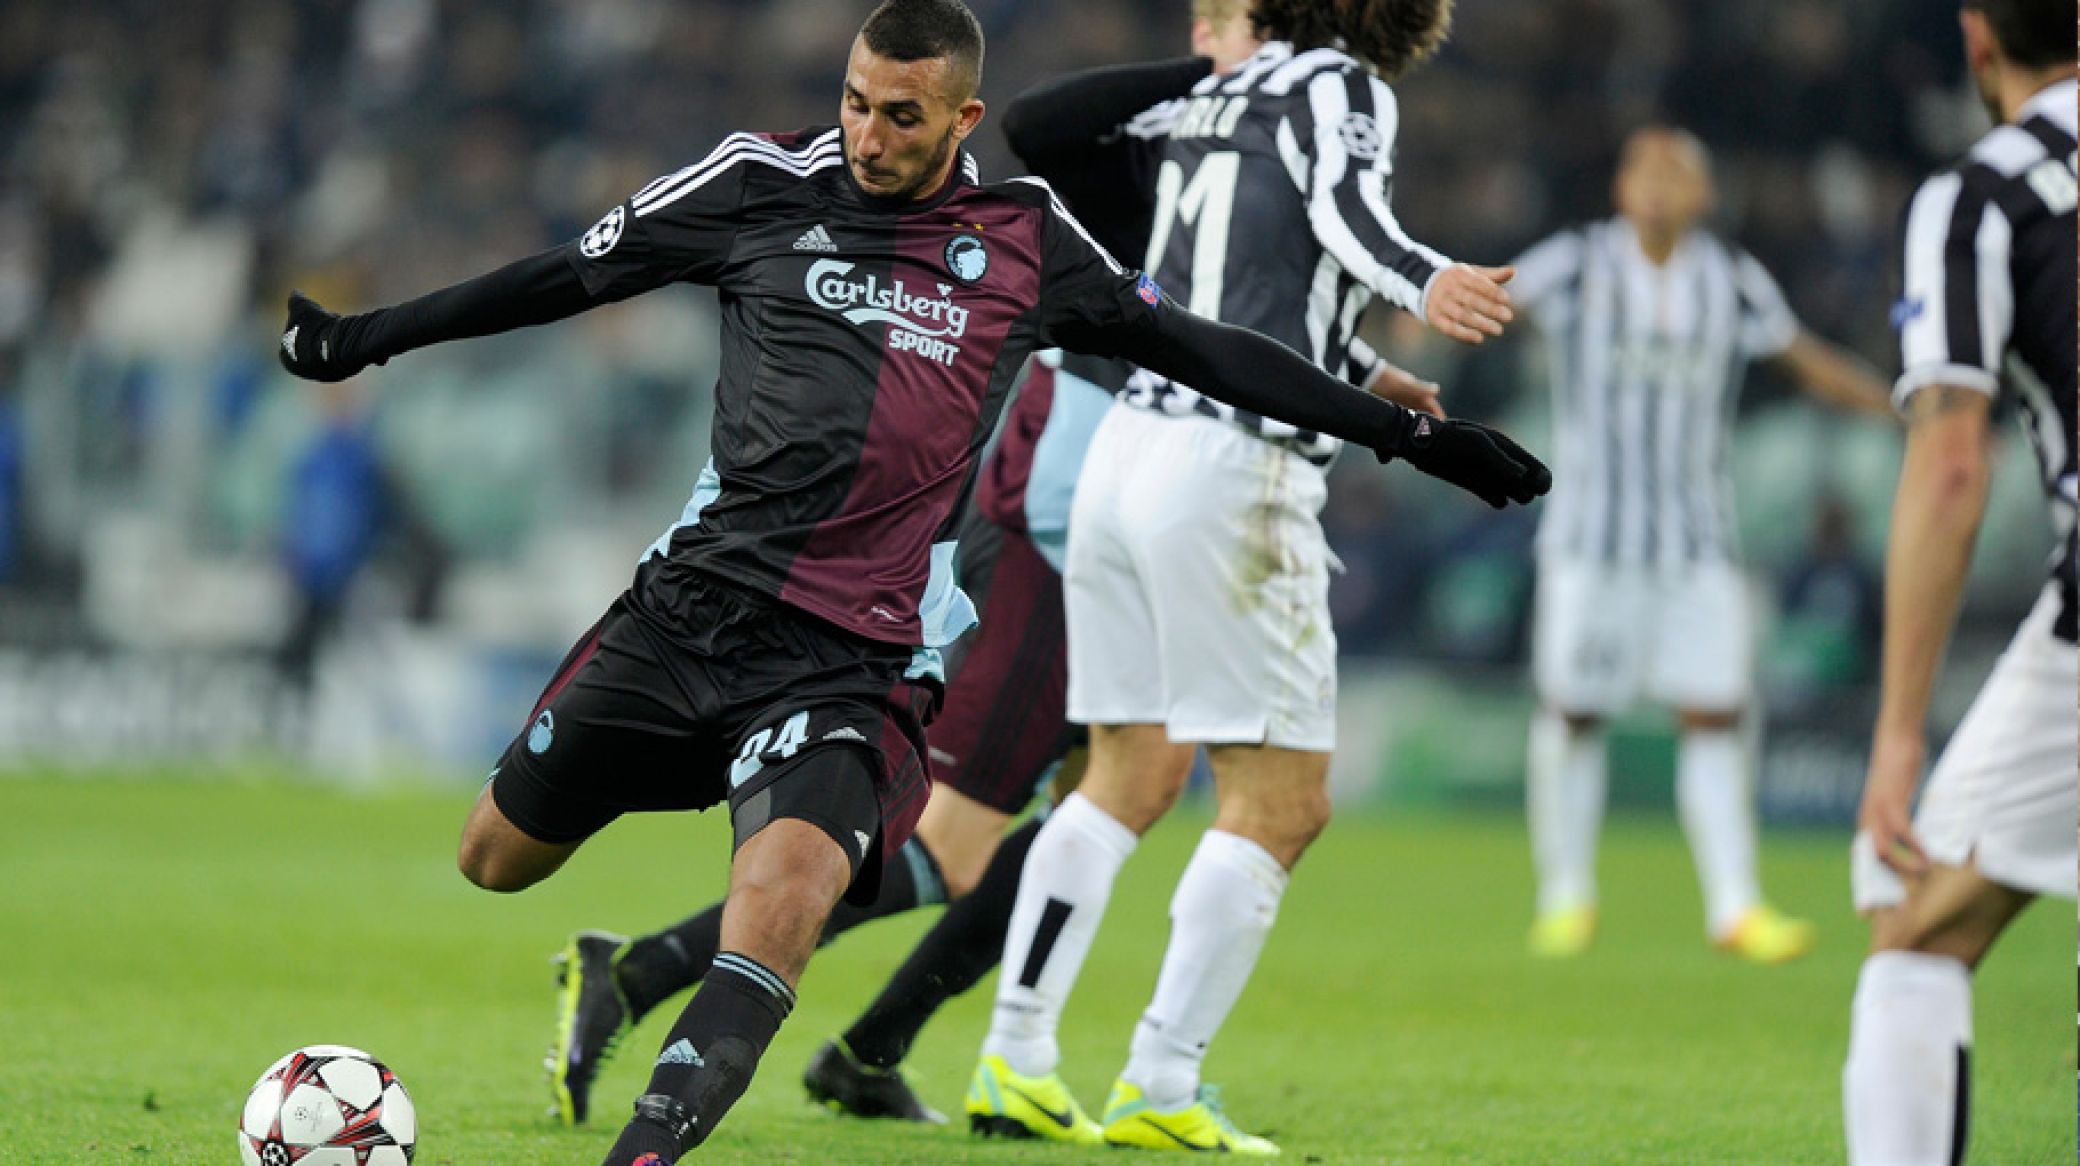 3-1-nederlag til F.C. København mod Juventus